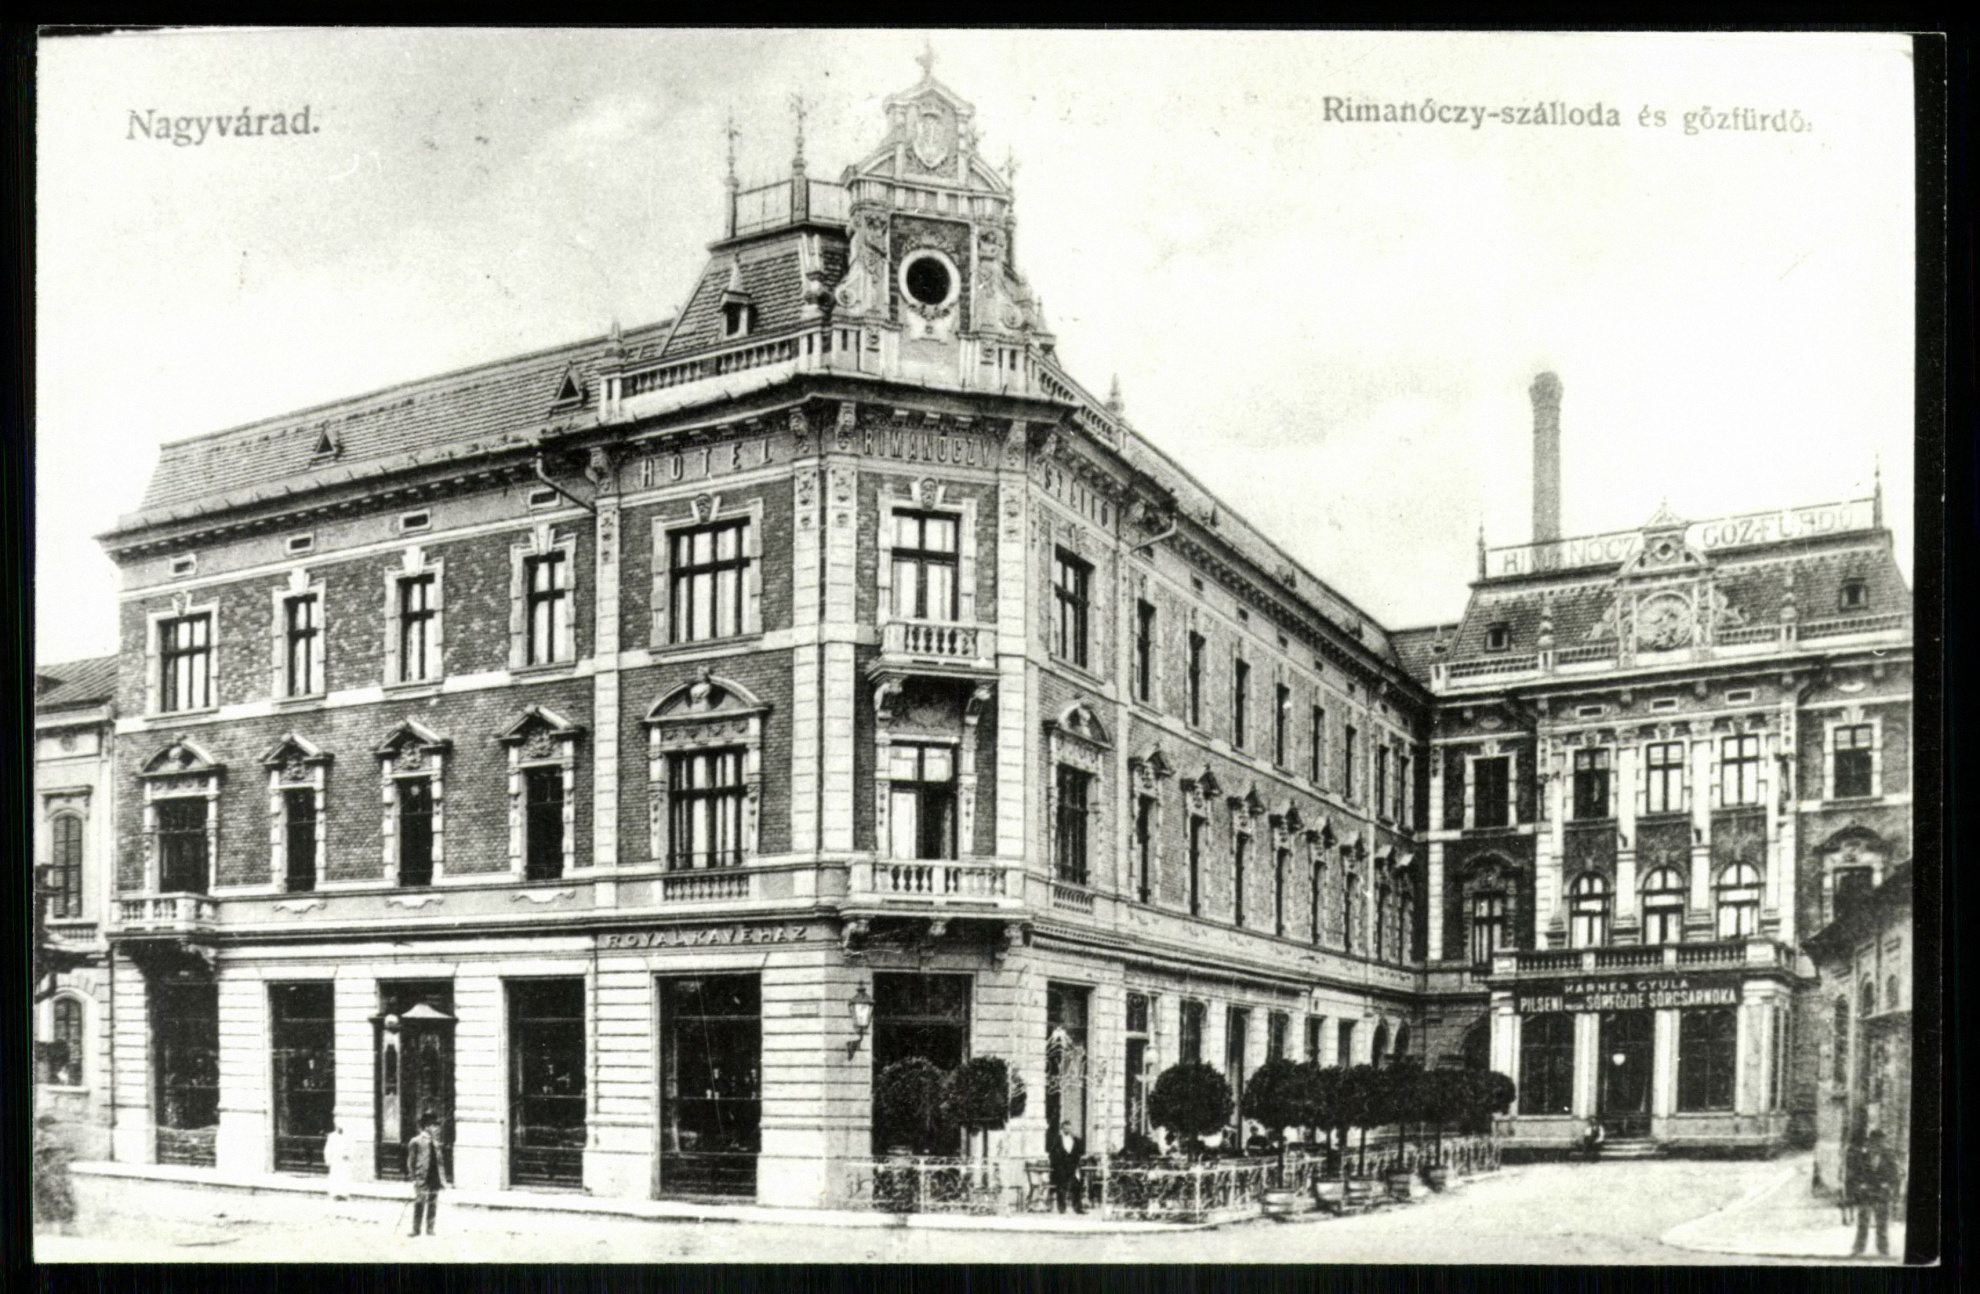 Nagyvárad Rimanóczy szálloda és gőzfürdő (Magyar Kereskedelmi és Vendéglátóipari Múzeum CC BY-NC-ND)